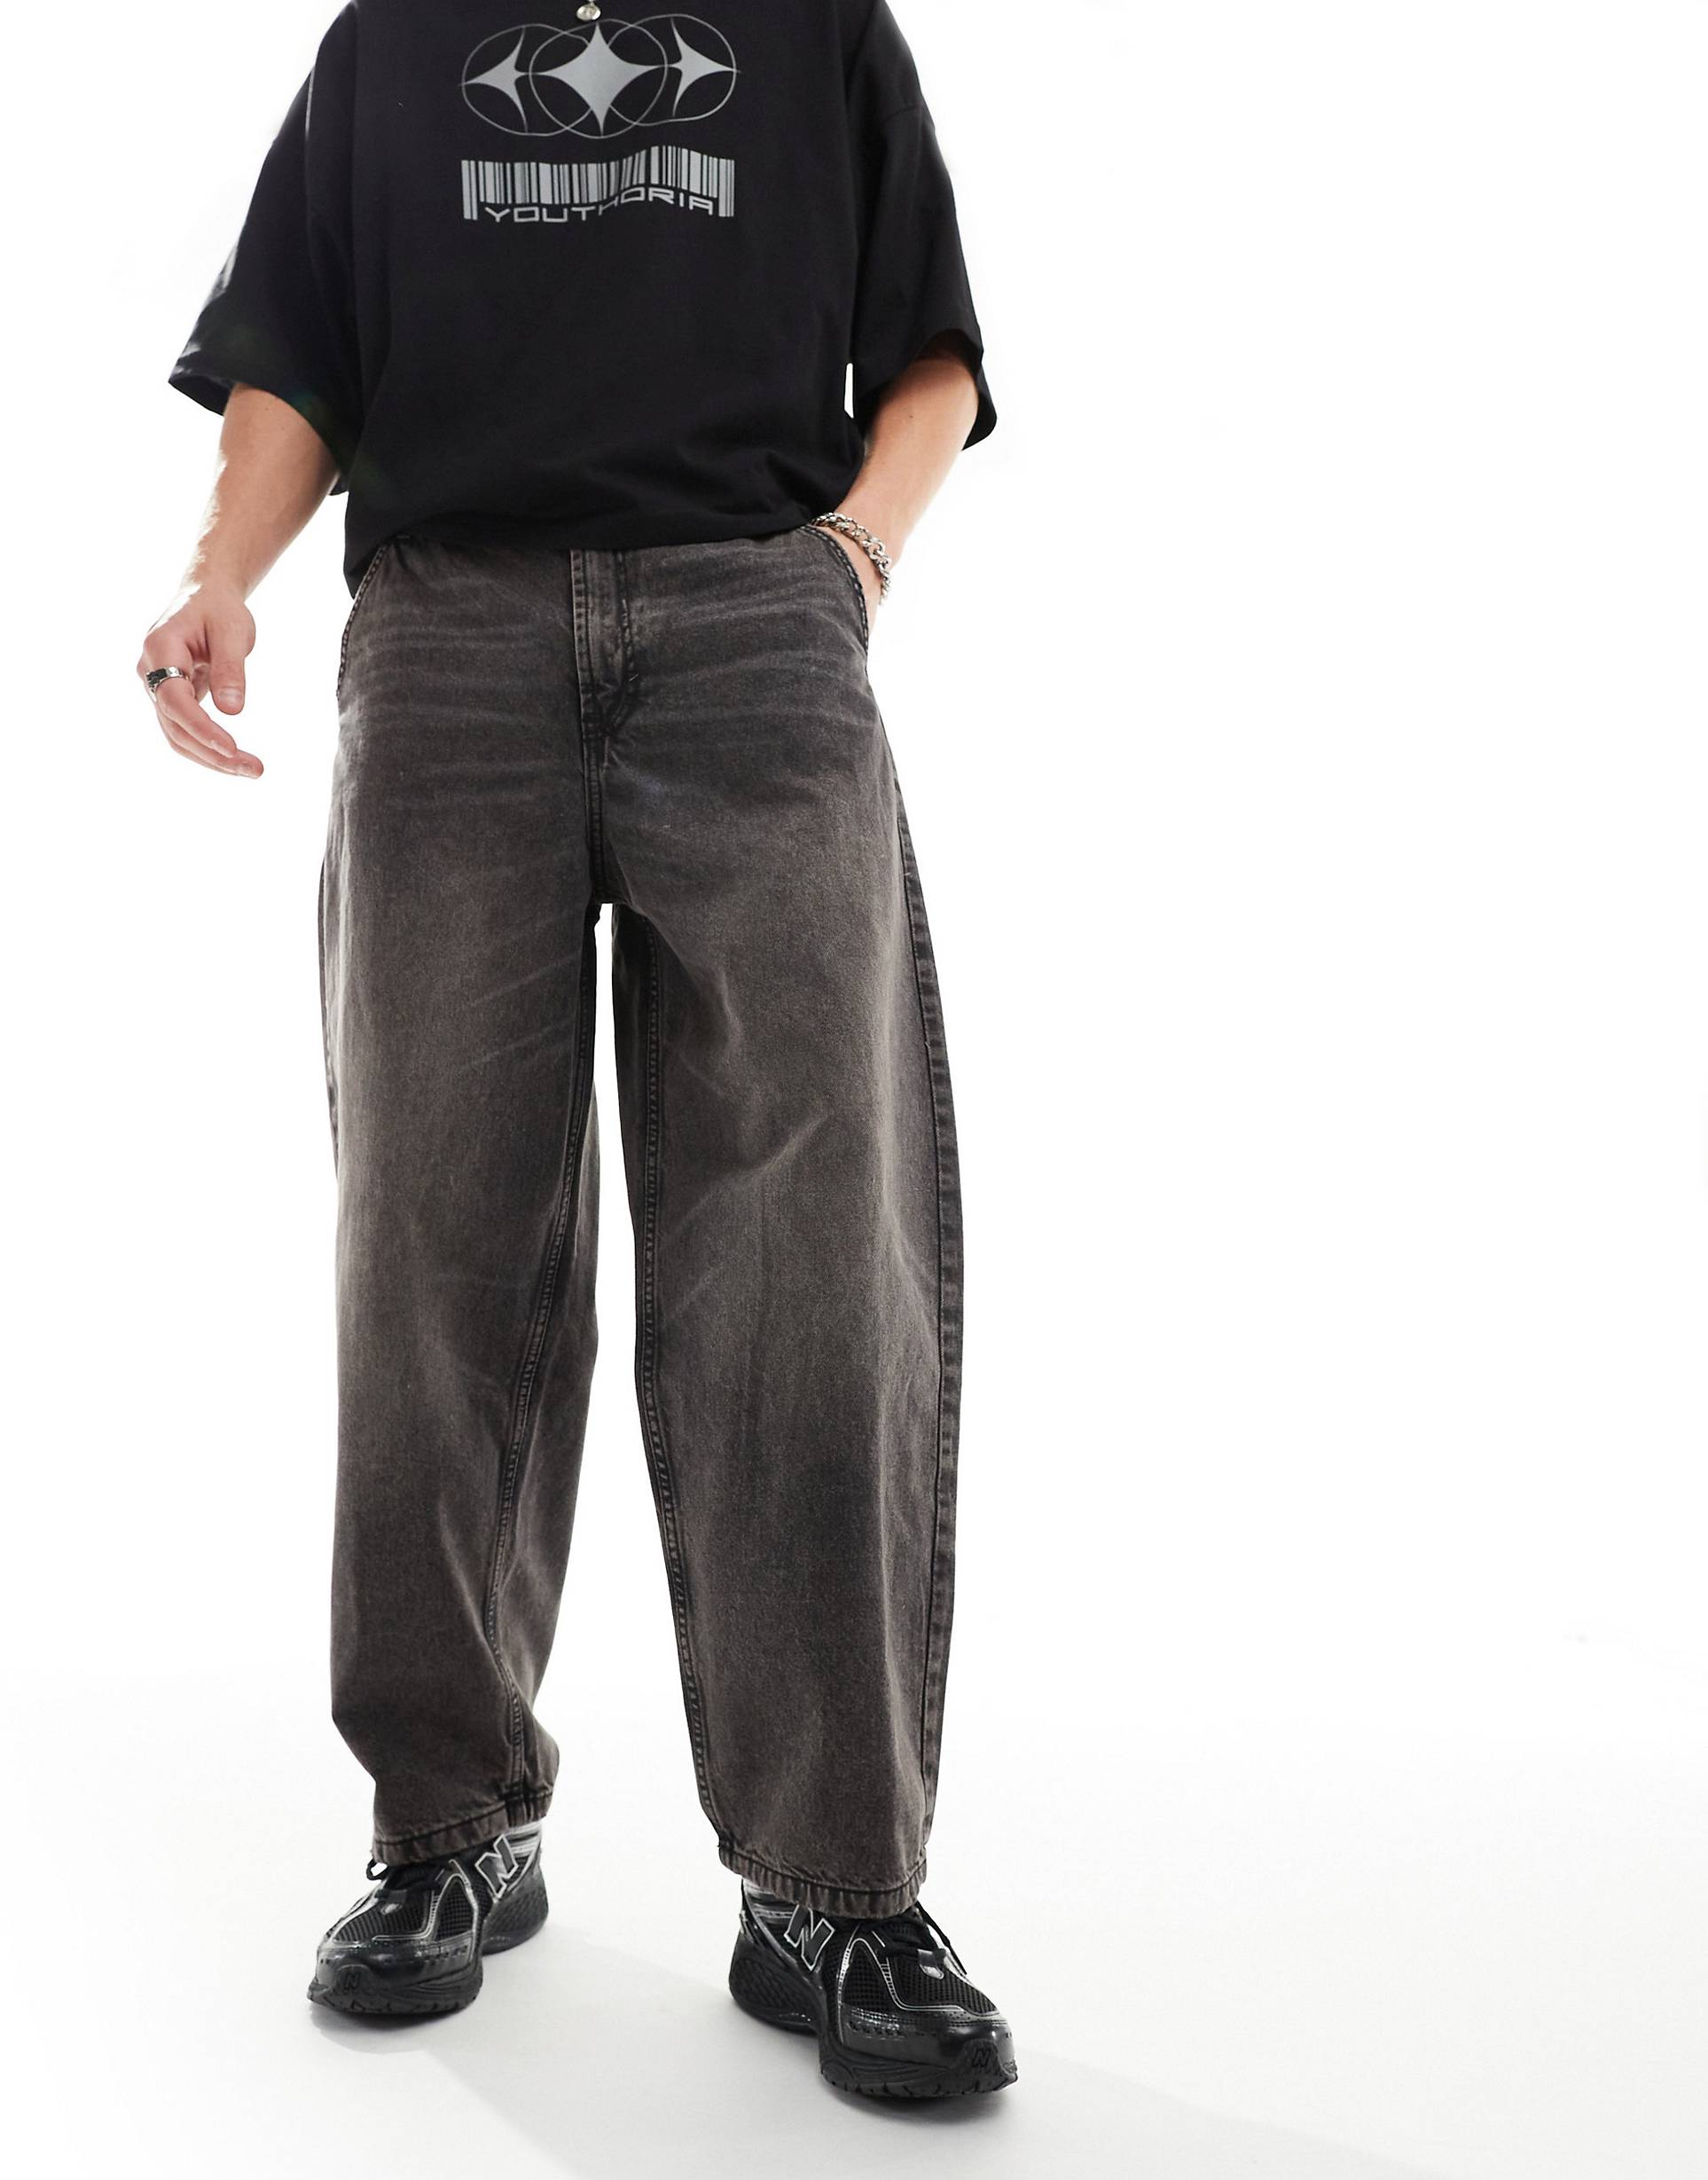 Джинсы Bershka Skater Fit Casted, коричневый джинсы bershka короткие 42 размер